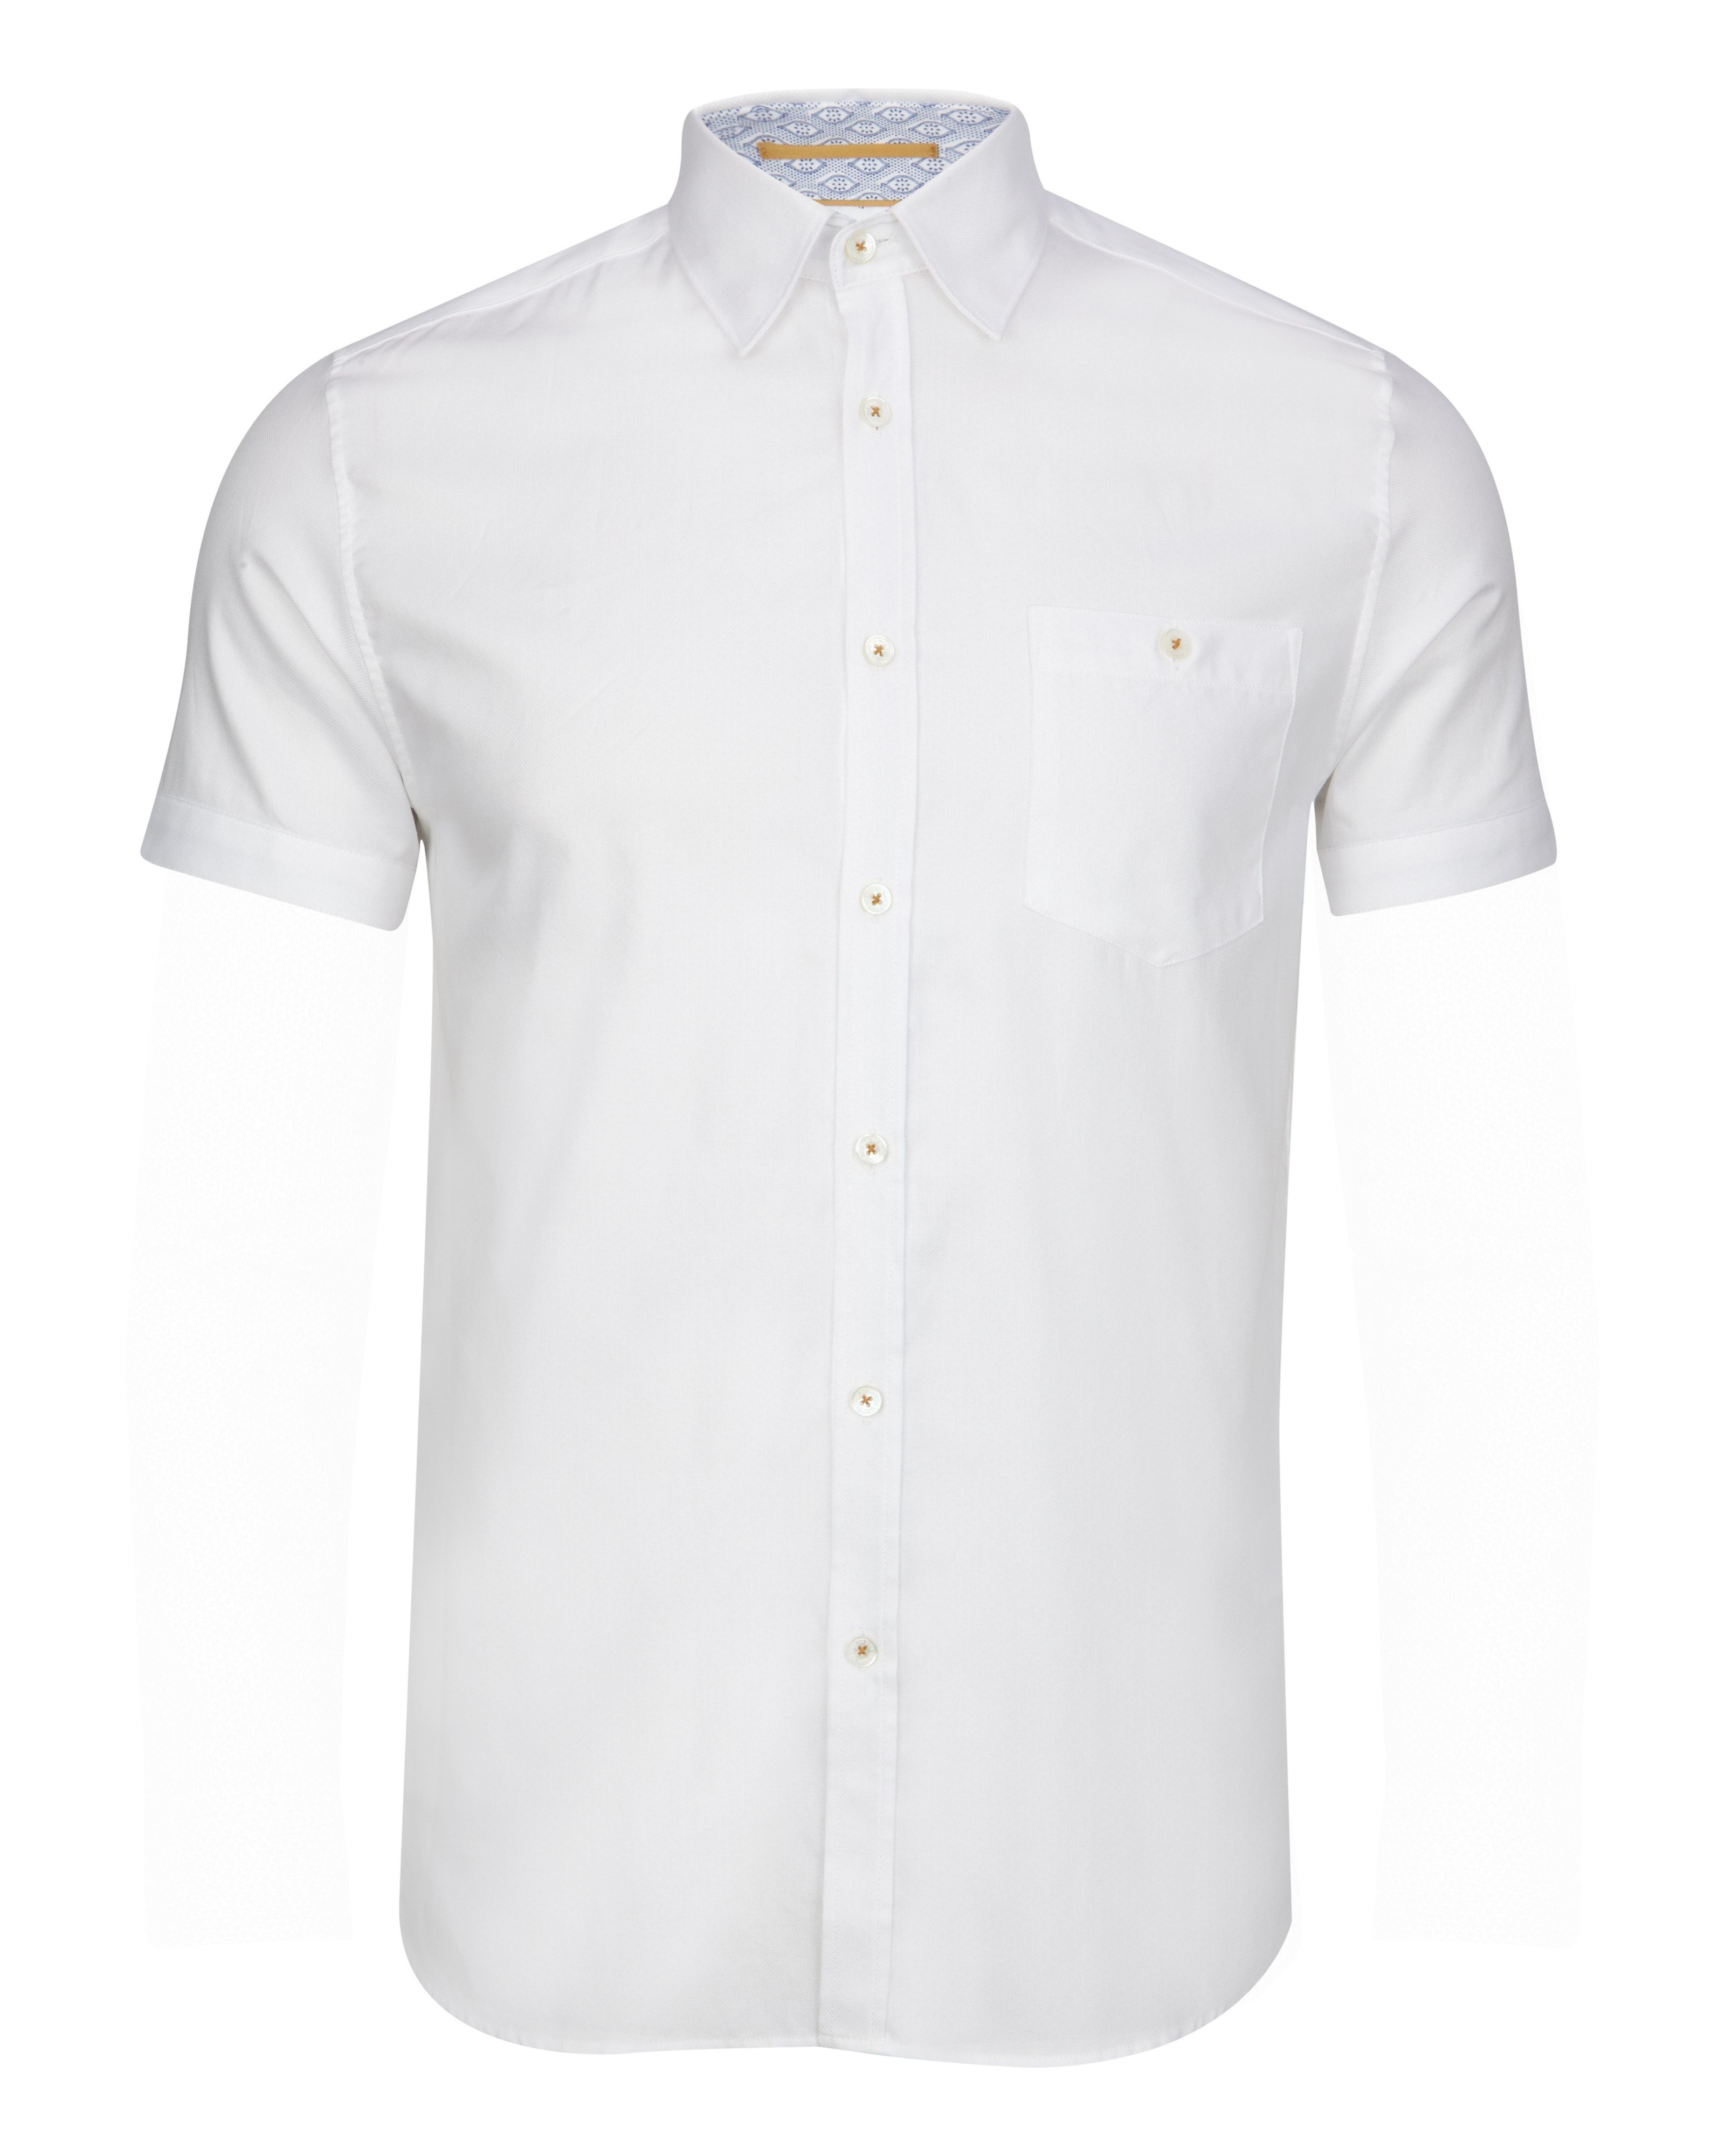 Ted baker Donot Plain Short Sleeve Shirt in White for Men | Lyst